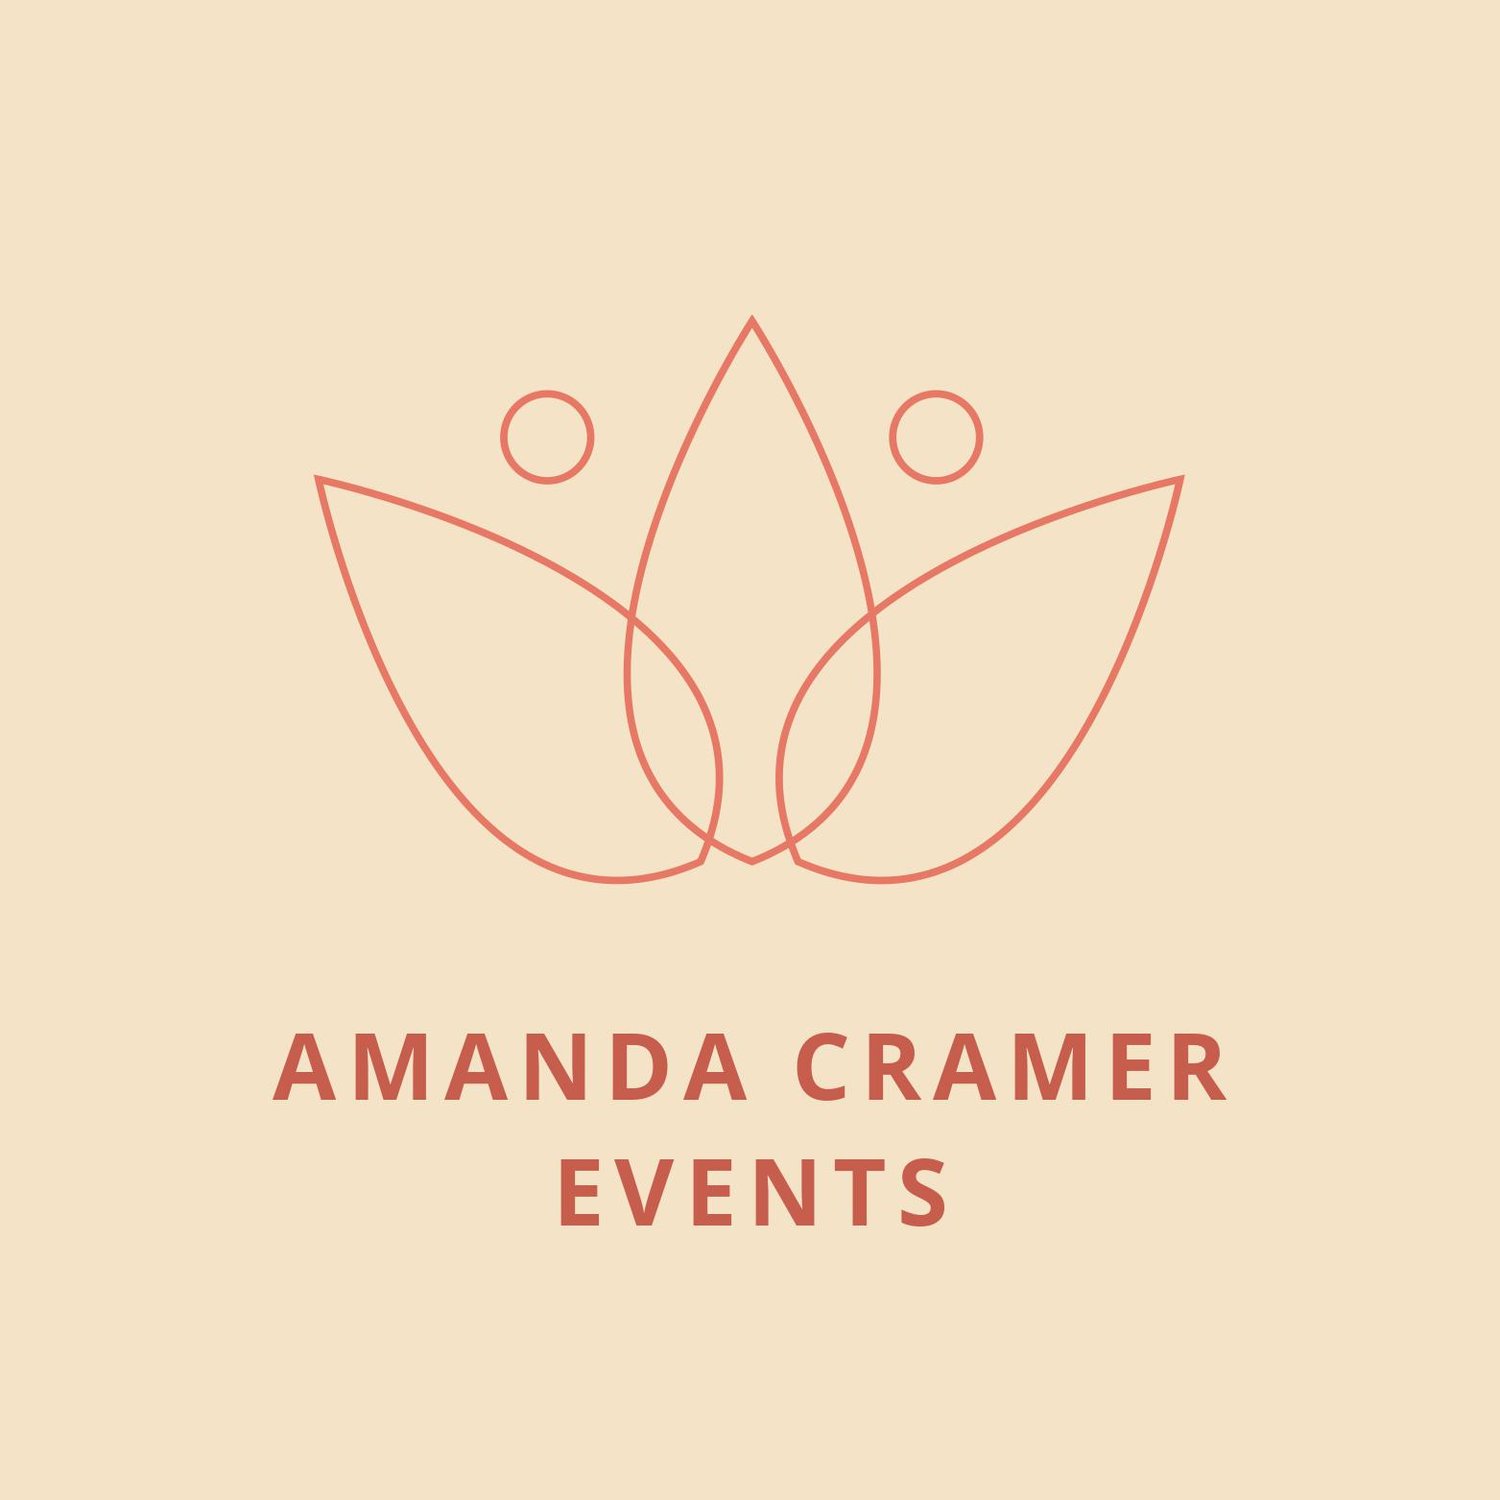 Amanda Cramer Events